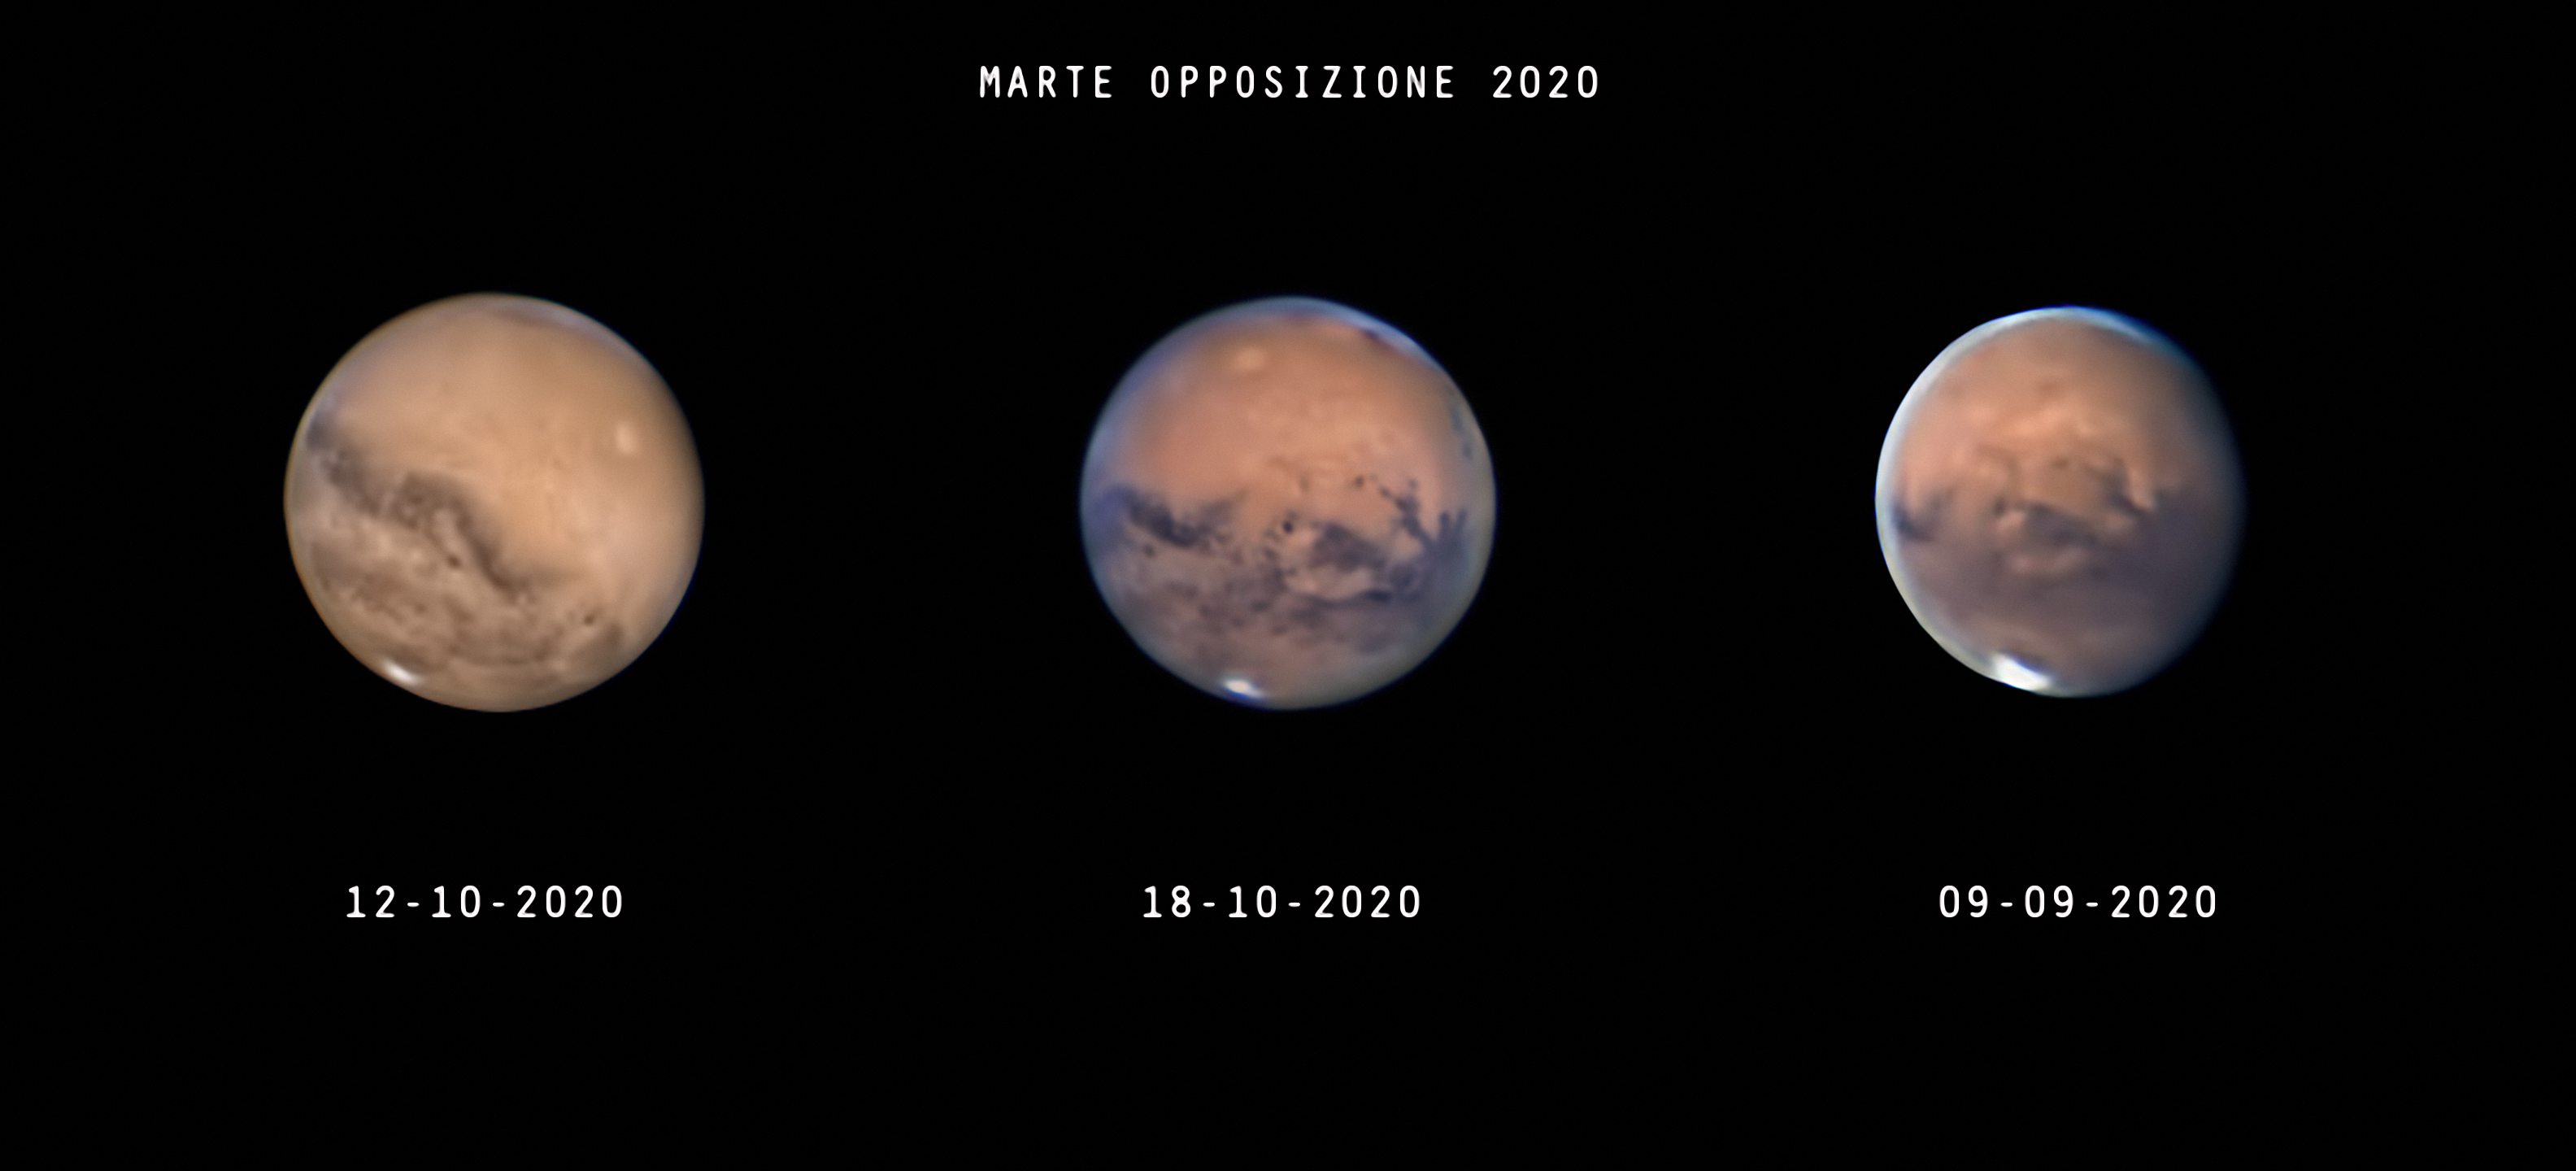 https://www.astrofilicernusco.org/storage/2021/04/MARTE-OPPOSIZIONE-2020-1.jpg